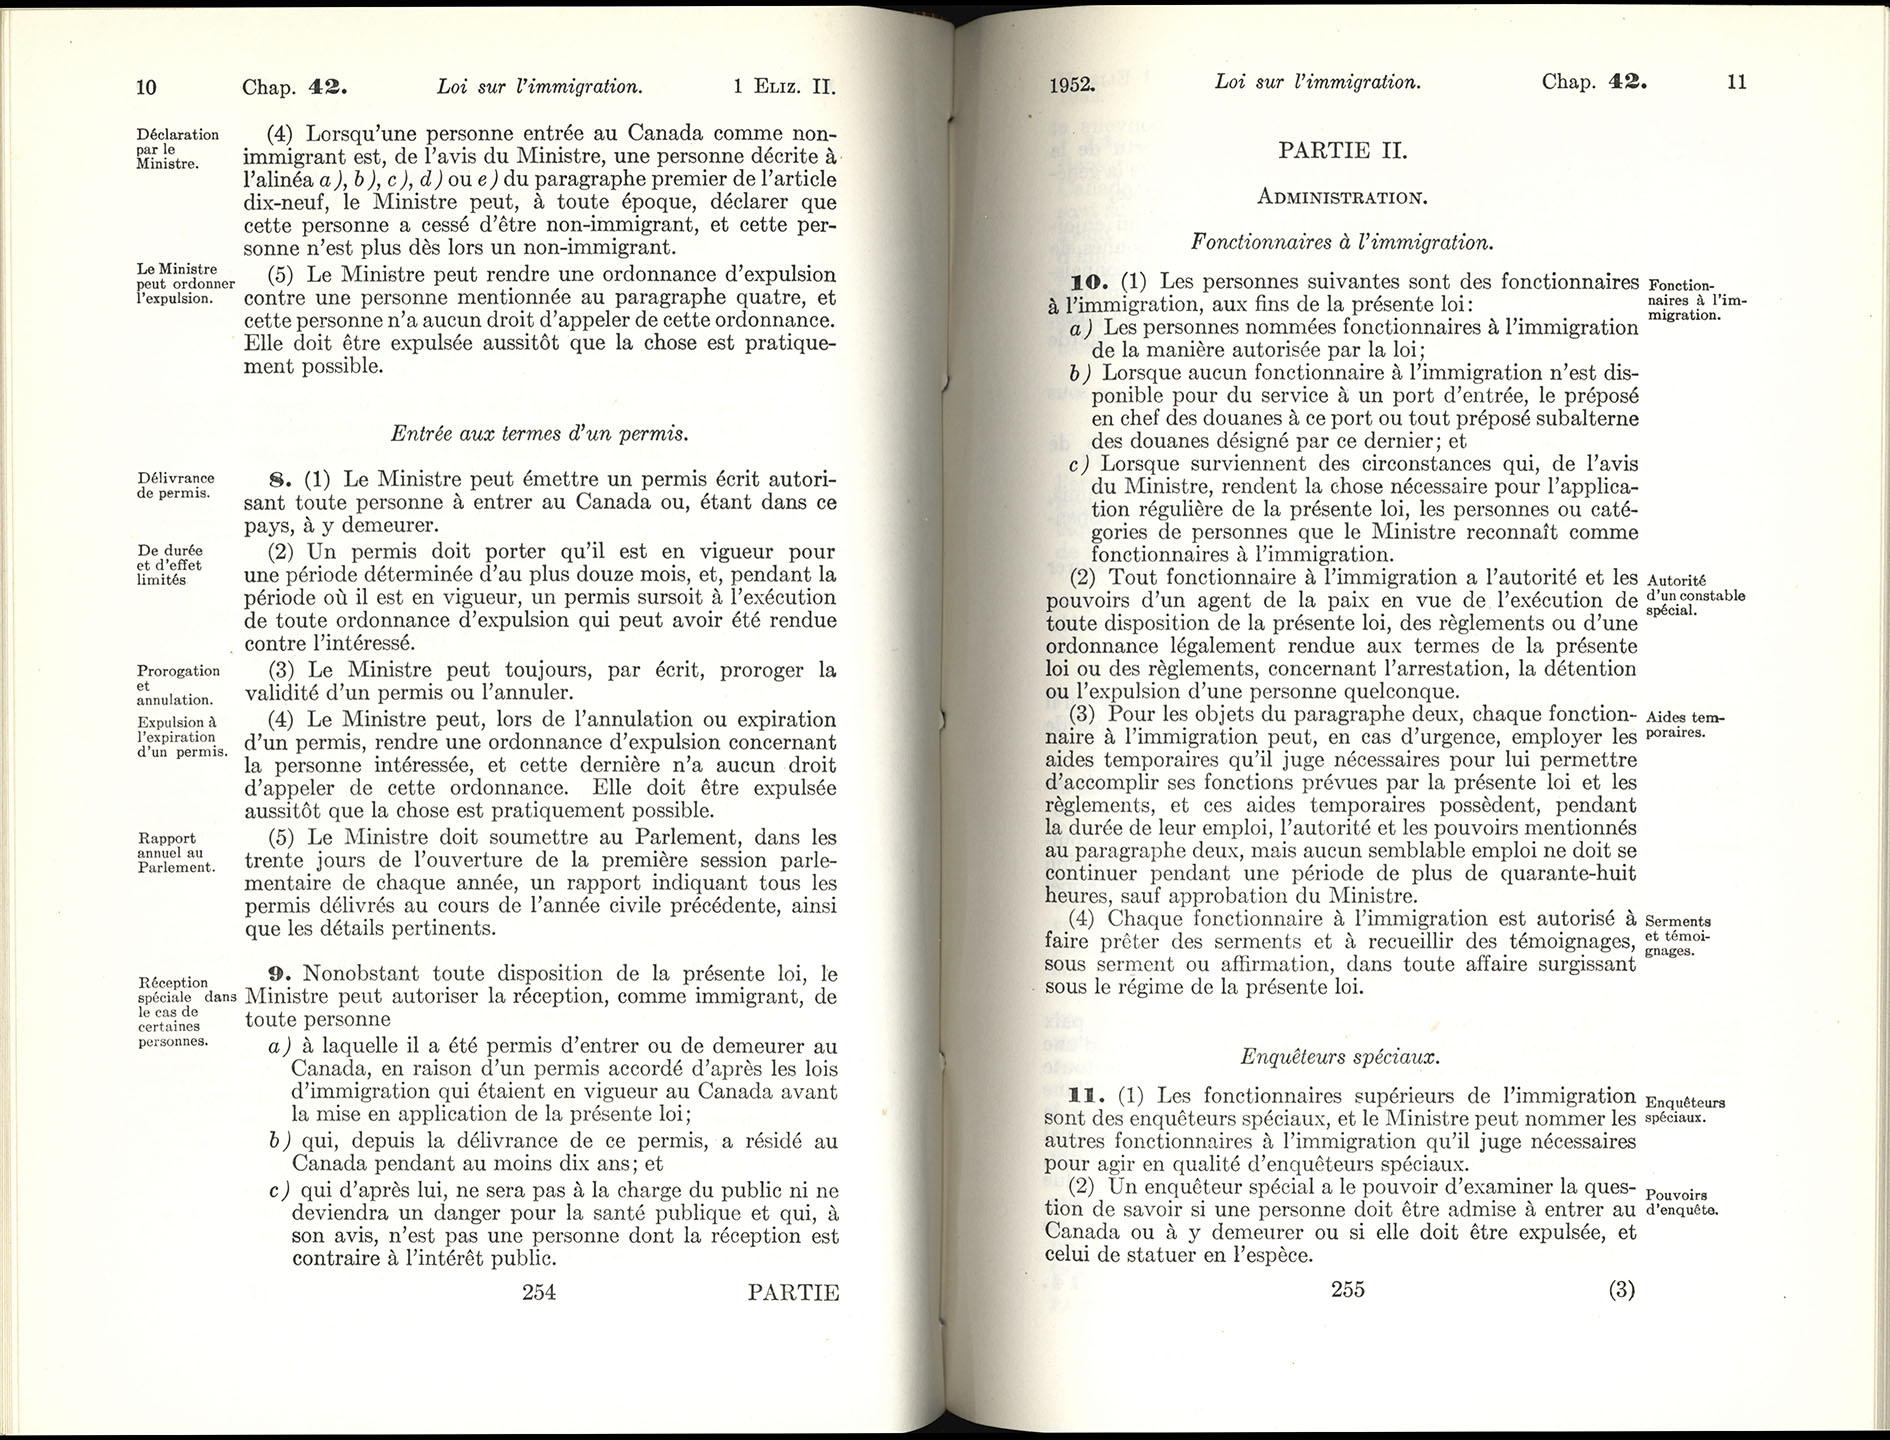 Chap 42 Page 254, 255 Loi sur l’immigration, 1952